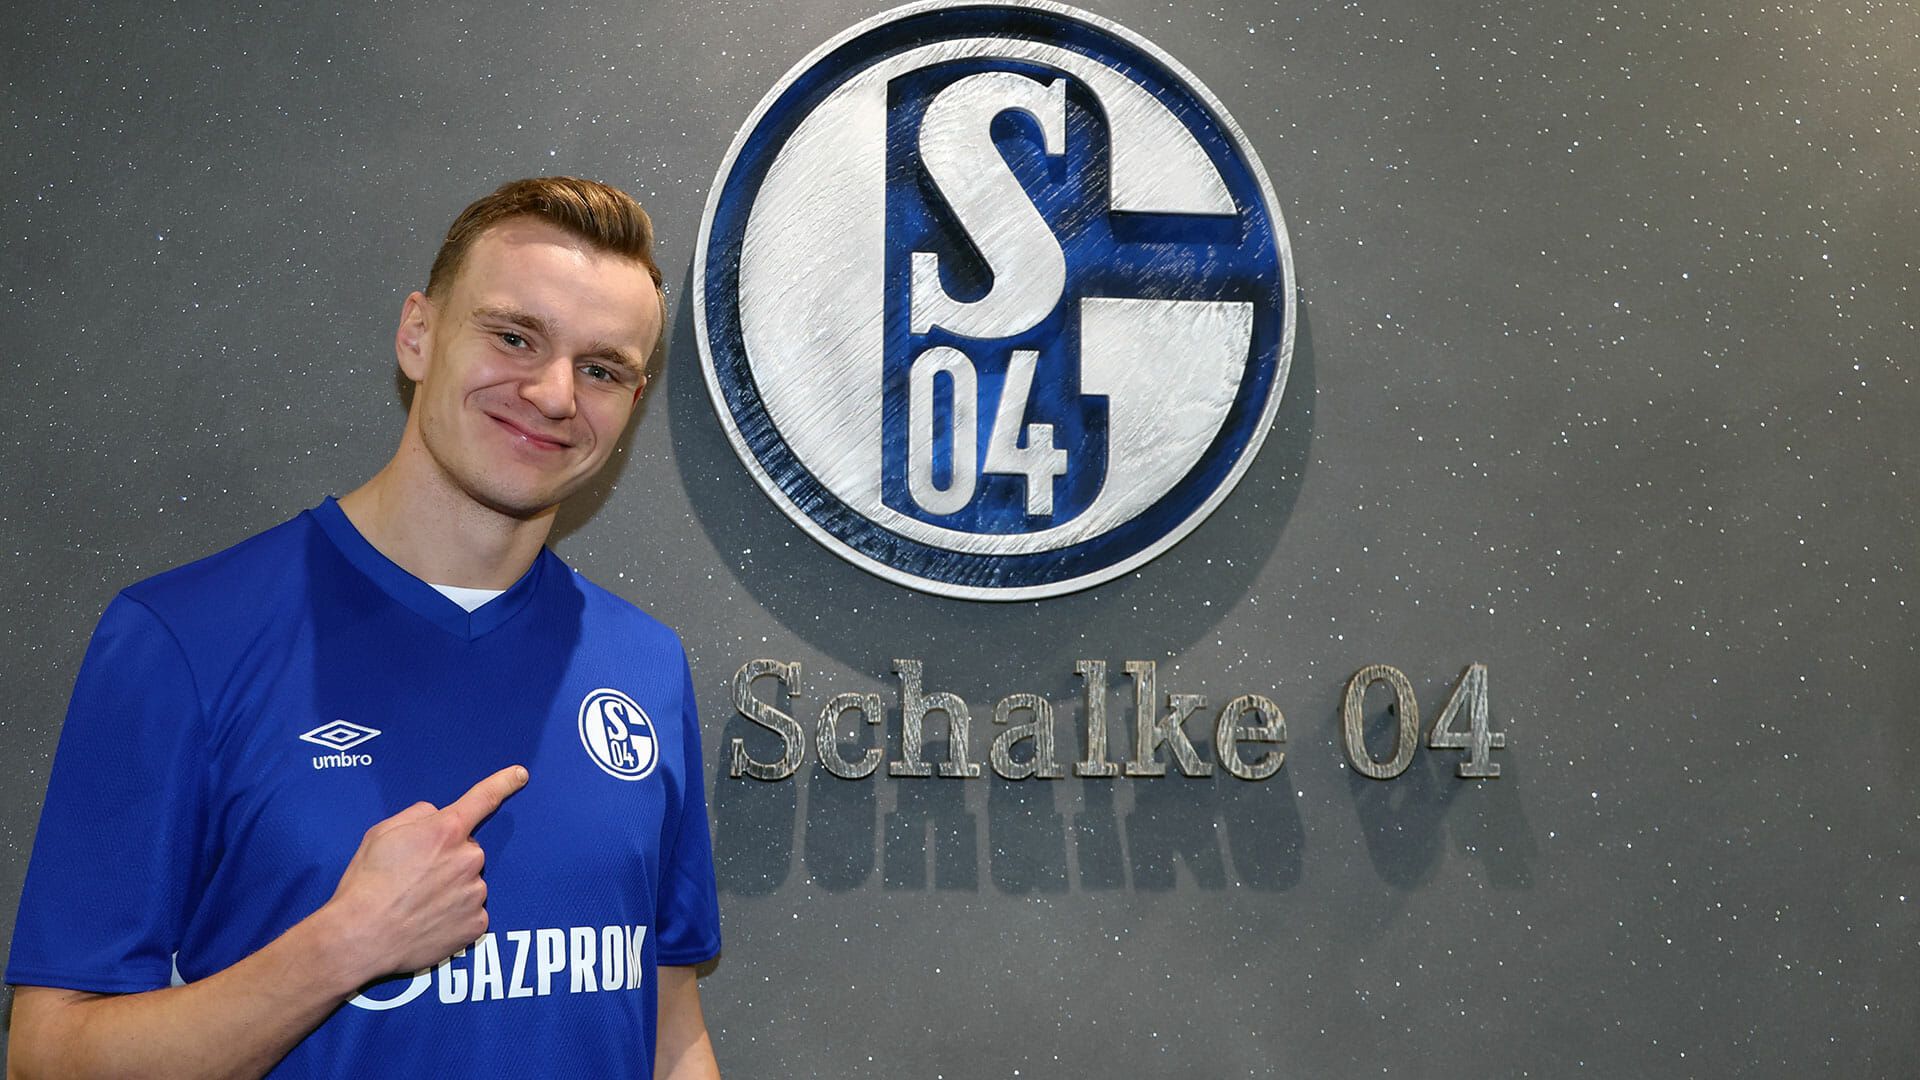 Martin Hinz + Schalke04 =❤❤❤